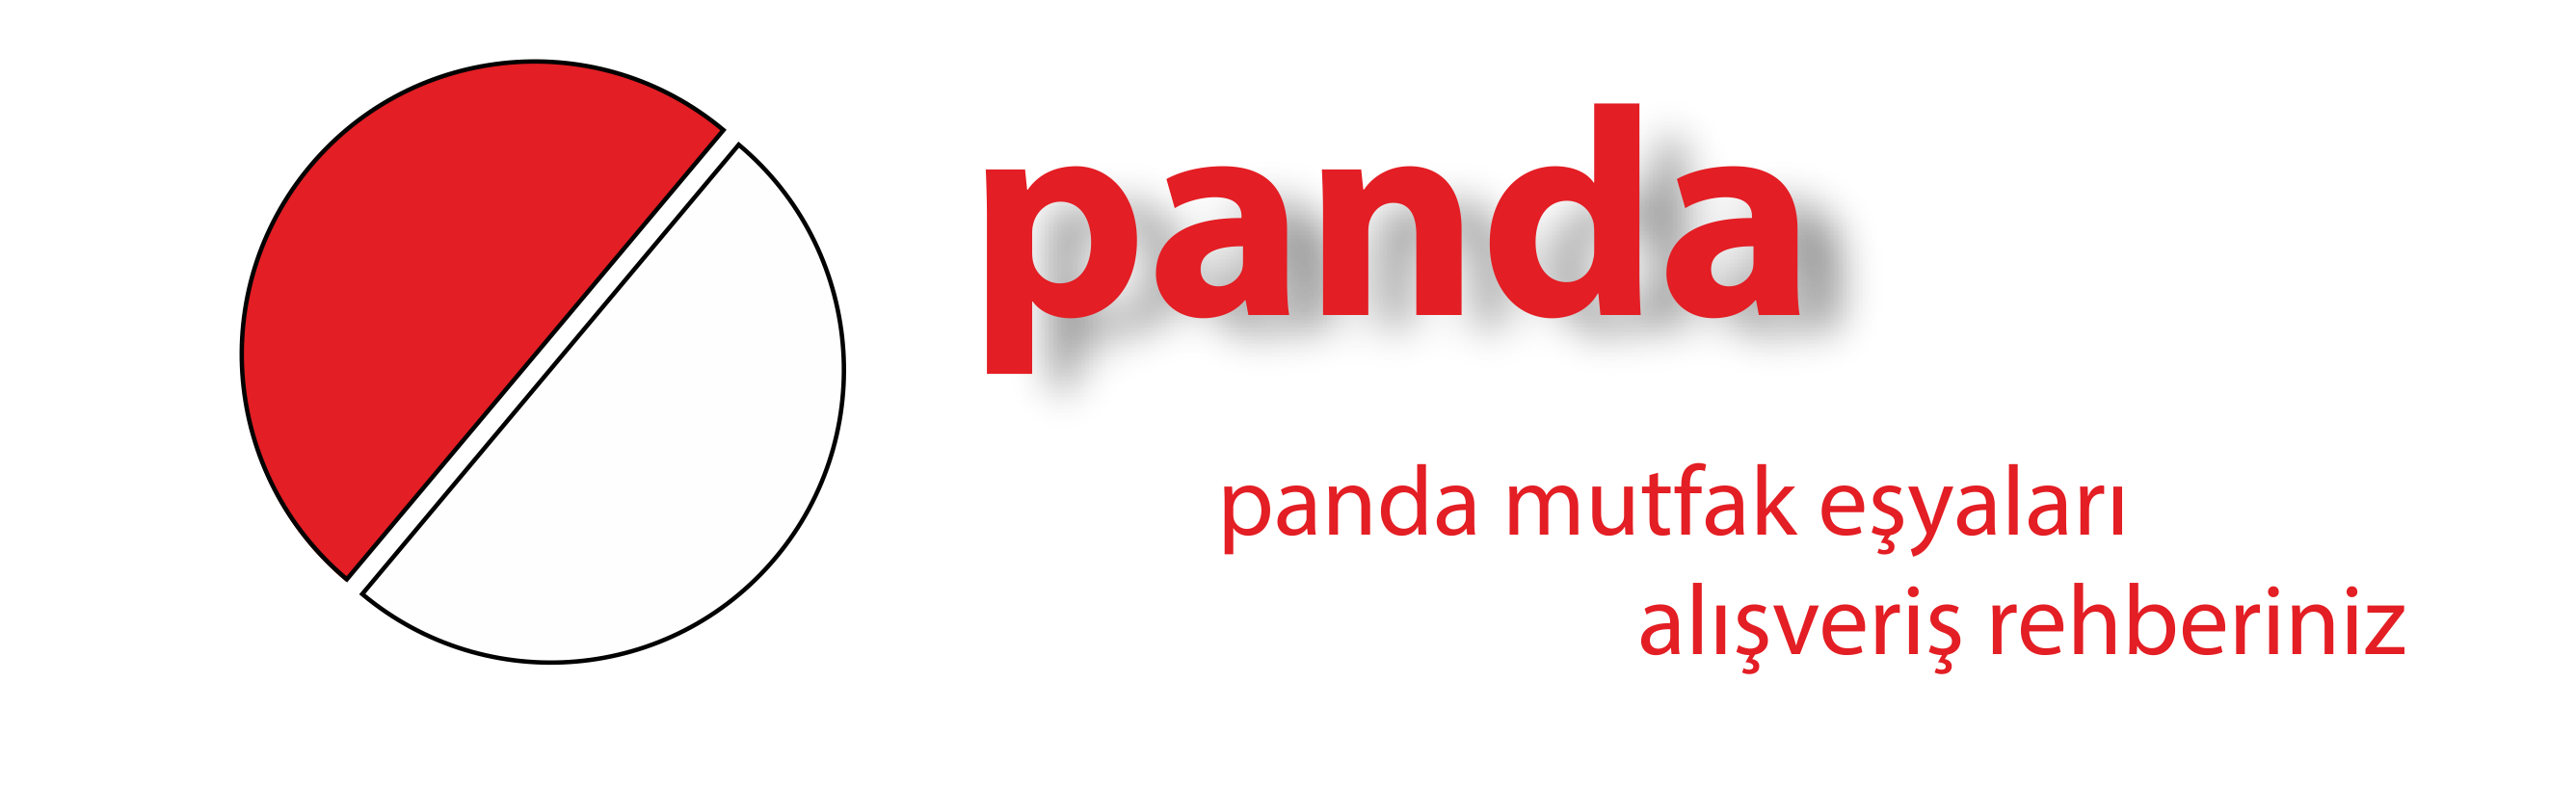 Panda Mutfak Eşyaları